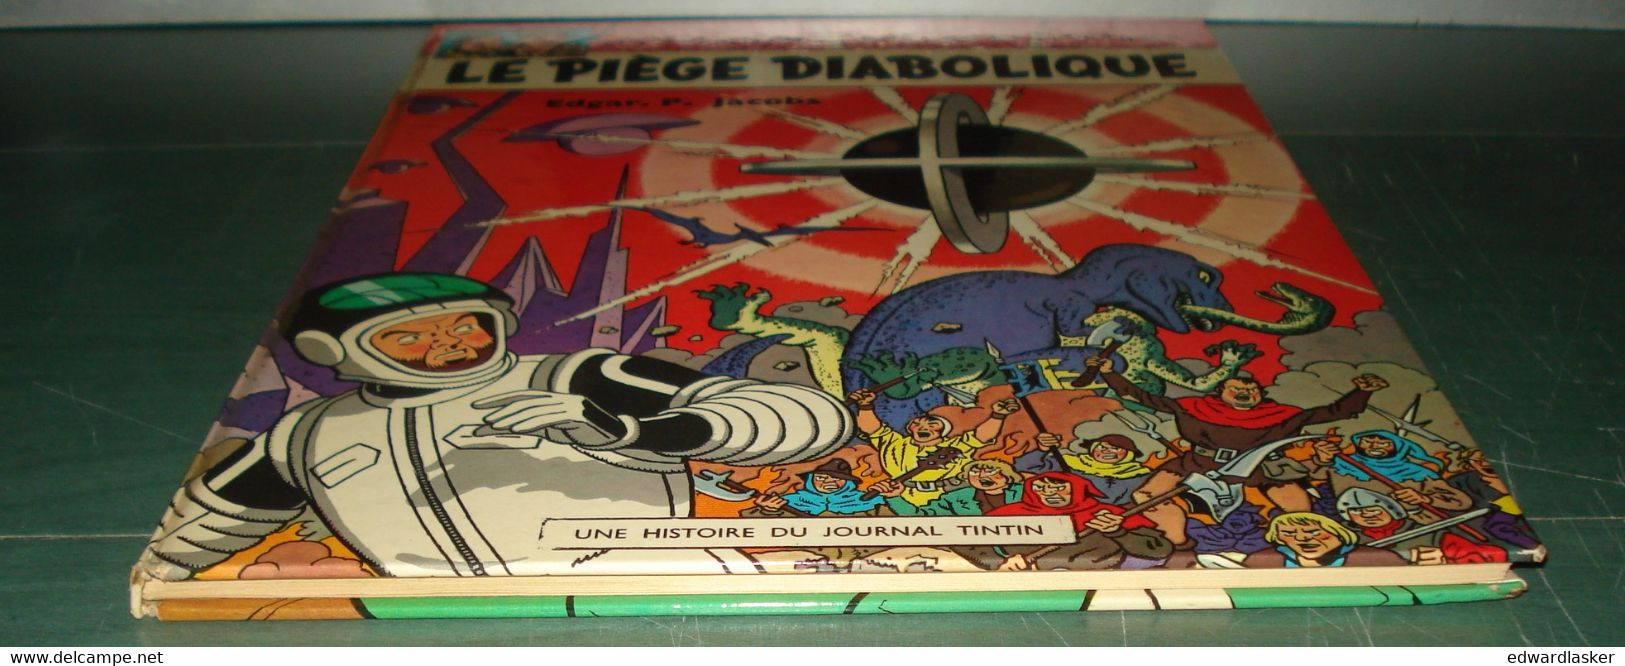 BLAKE et MORTIMER : Le Piège diabolique /Jacobs - Rééd. Dargaud Lombard 1968 - Pages de garde à l'atome